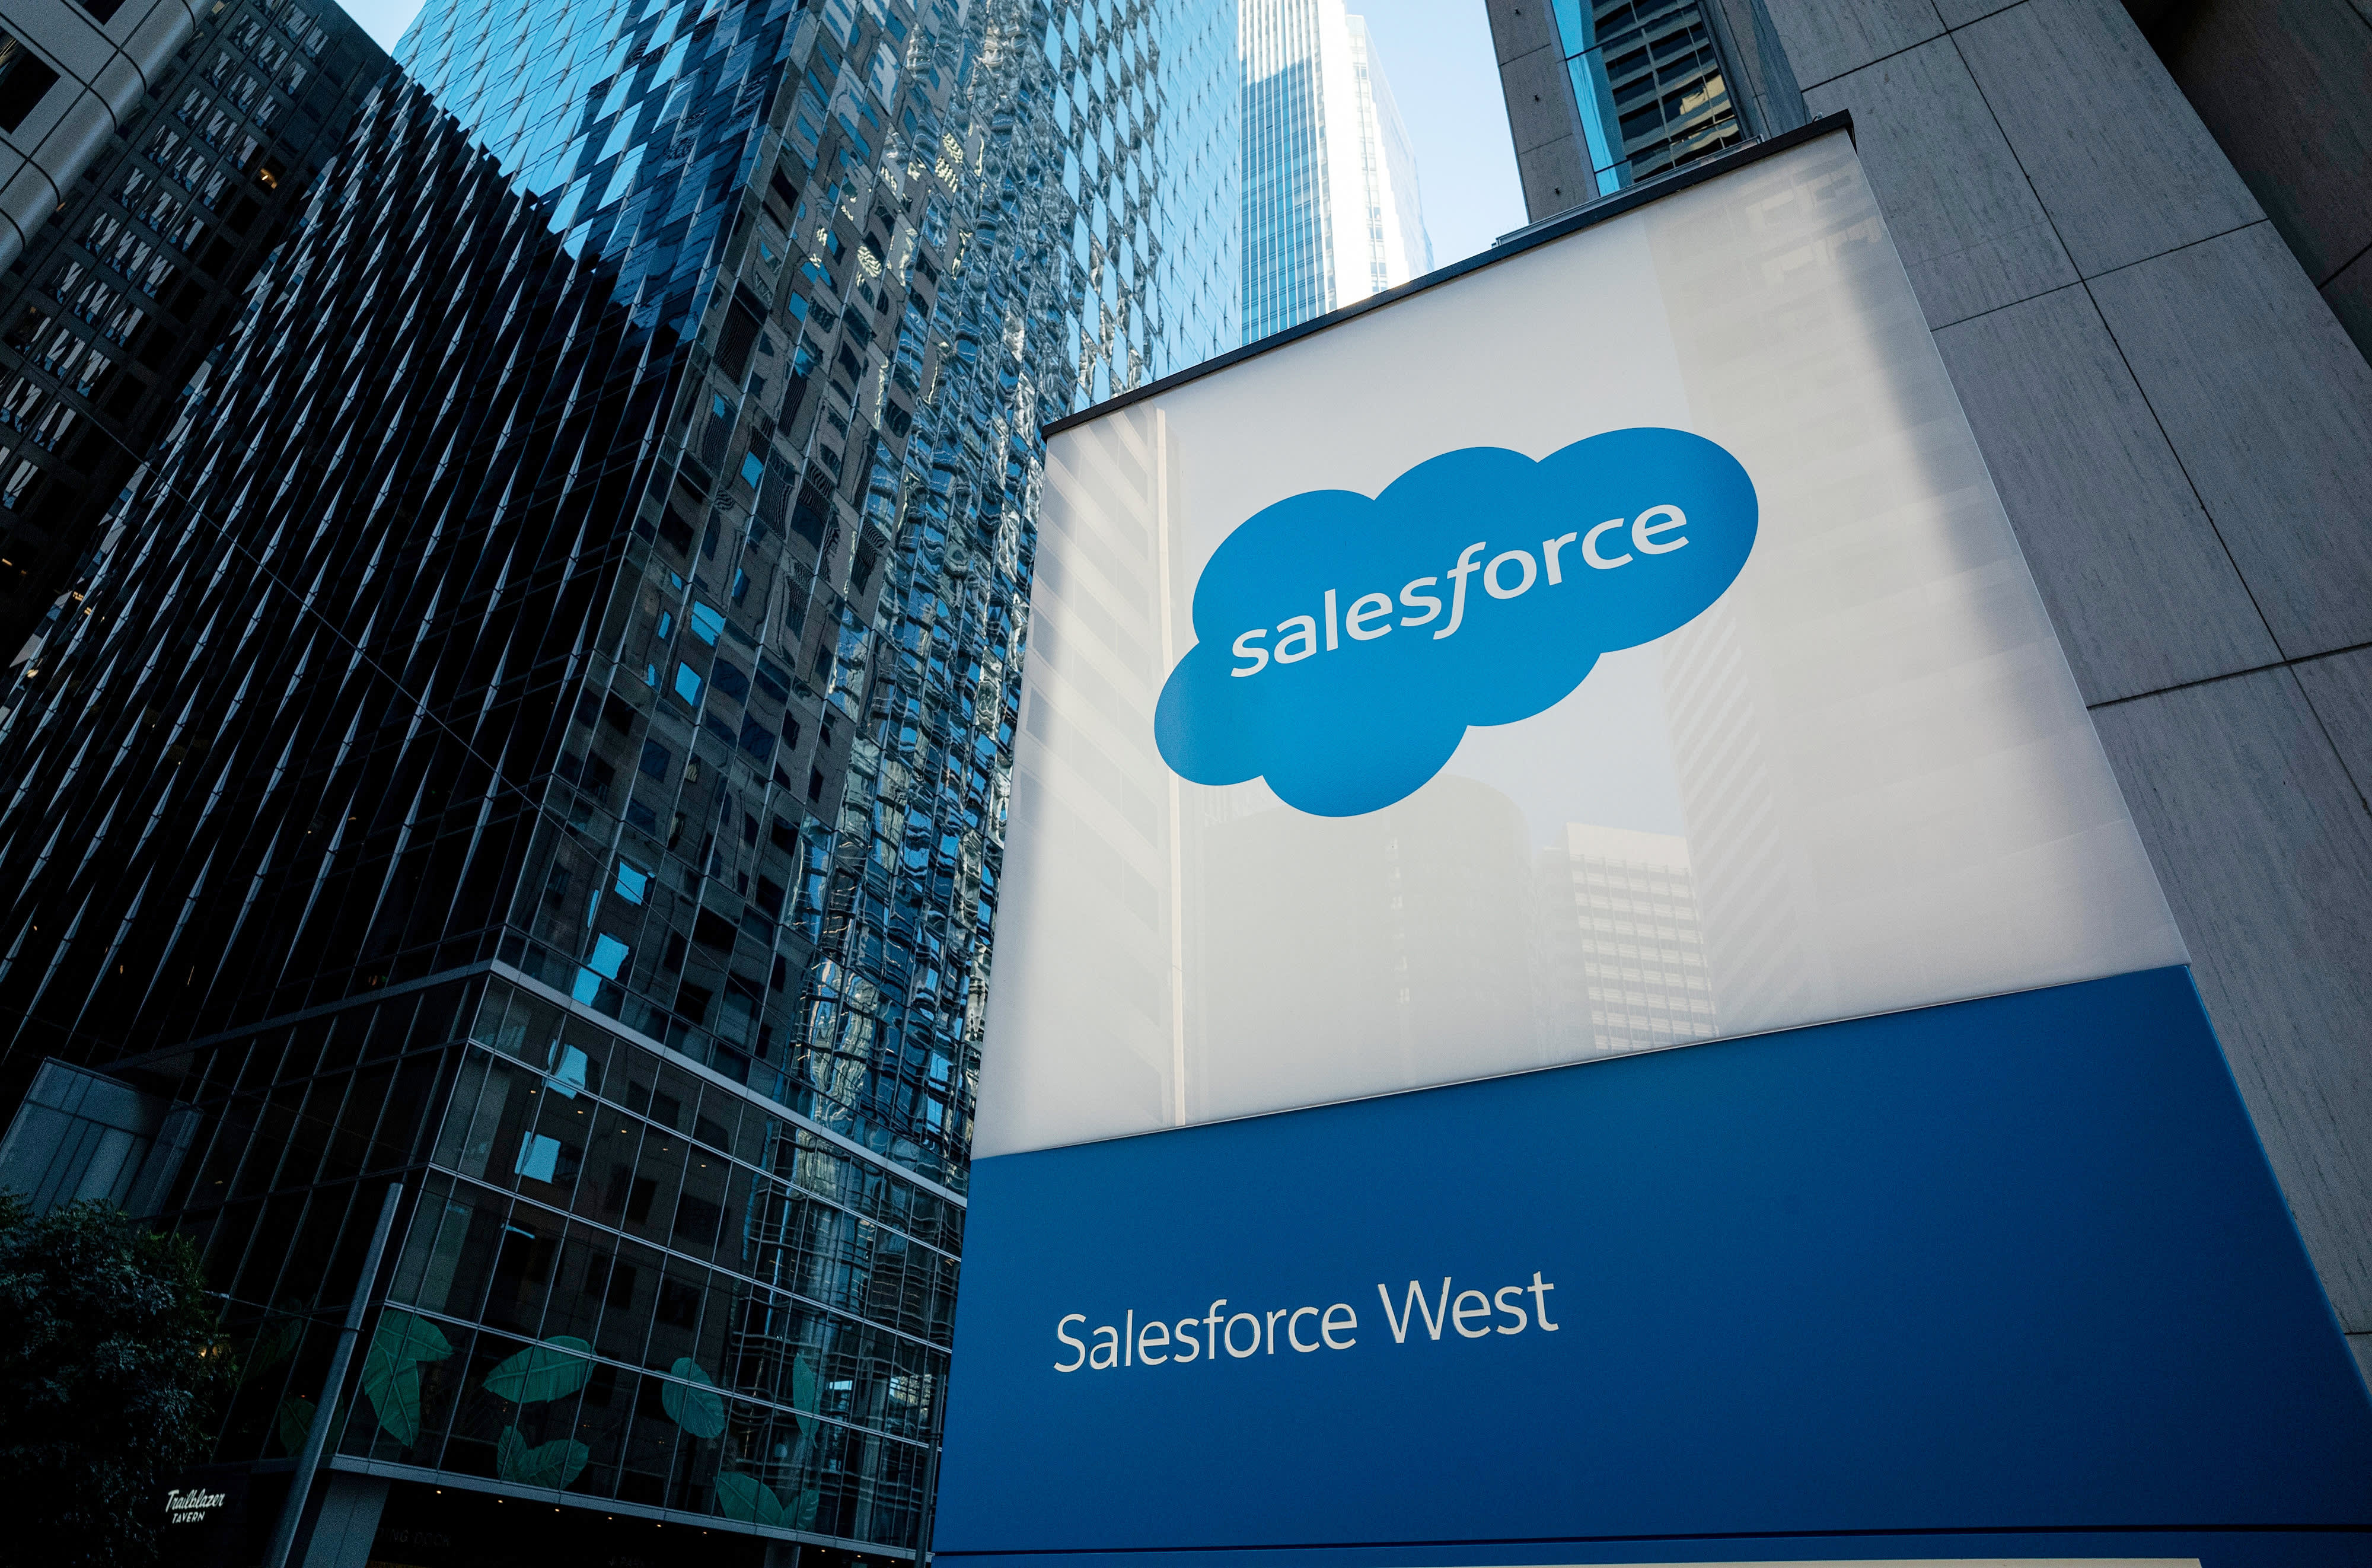 Kế hoạch cắt giảm chi phí của Salesforce là một bước rất cần thiết trong thời kỳ suy thoái kinh tế